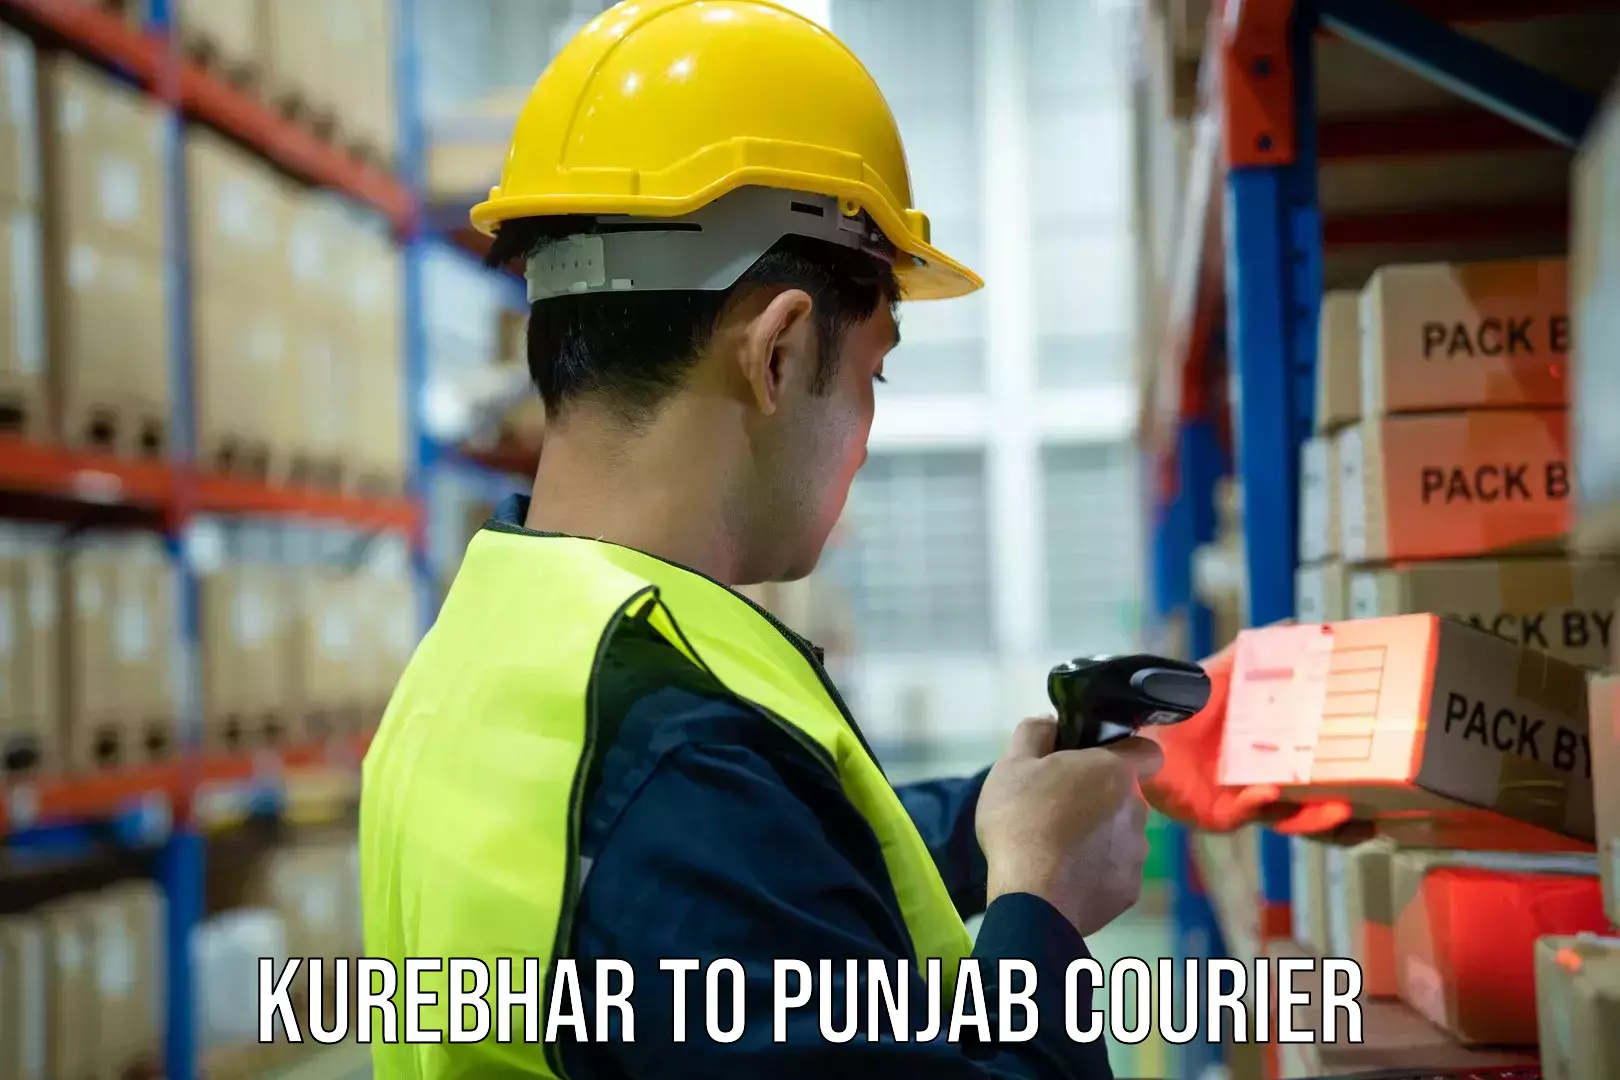 Parcel delivery Kurebhar to Punjab